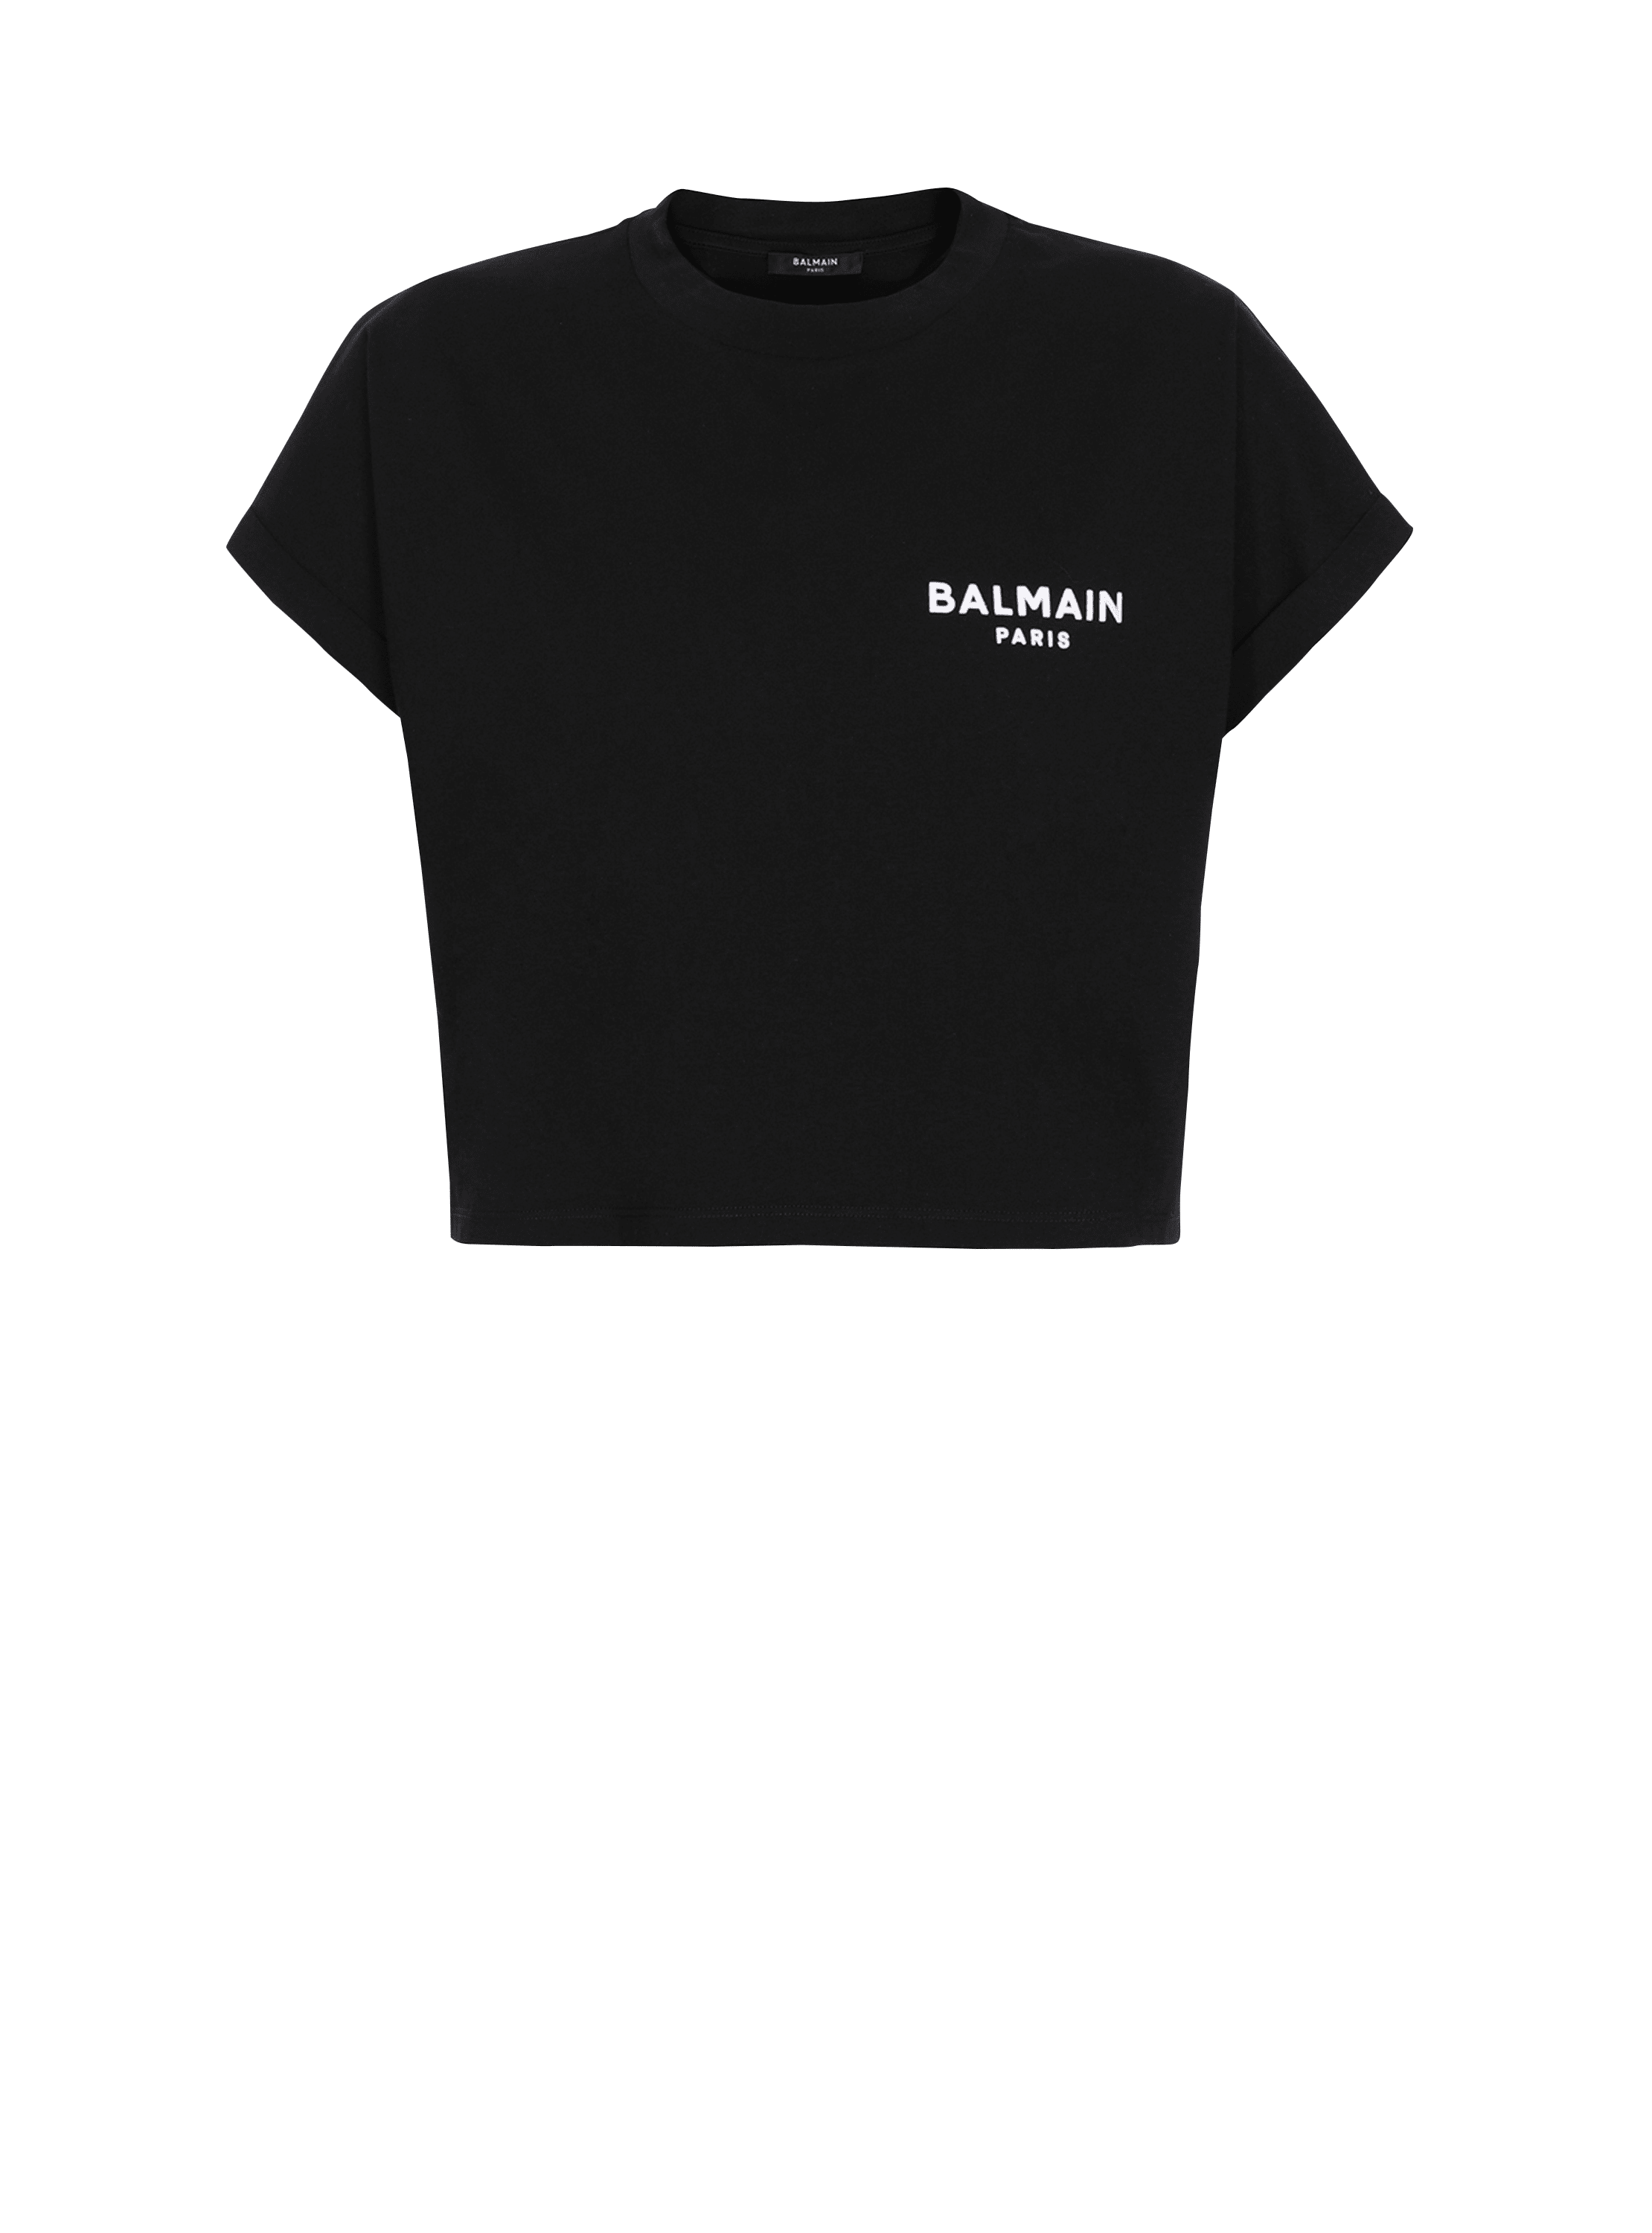 Cropped-T-Shirt aus Baumwolle mit kleinem geflocktem Balmain Logo, schwarz, hi-res